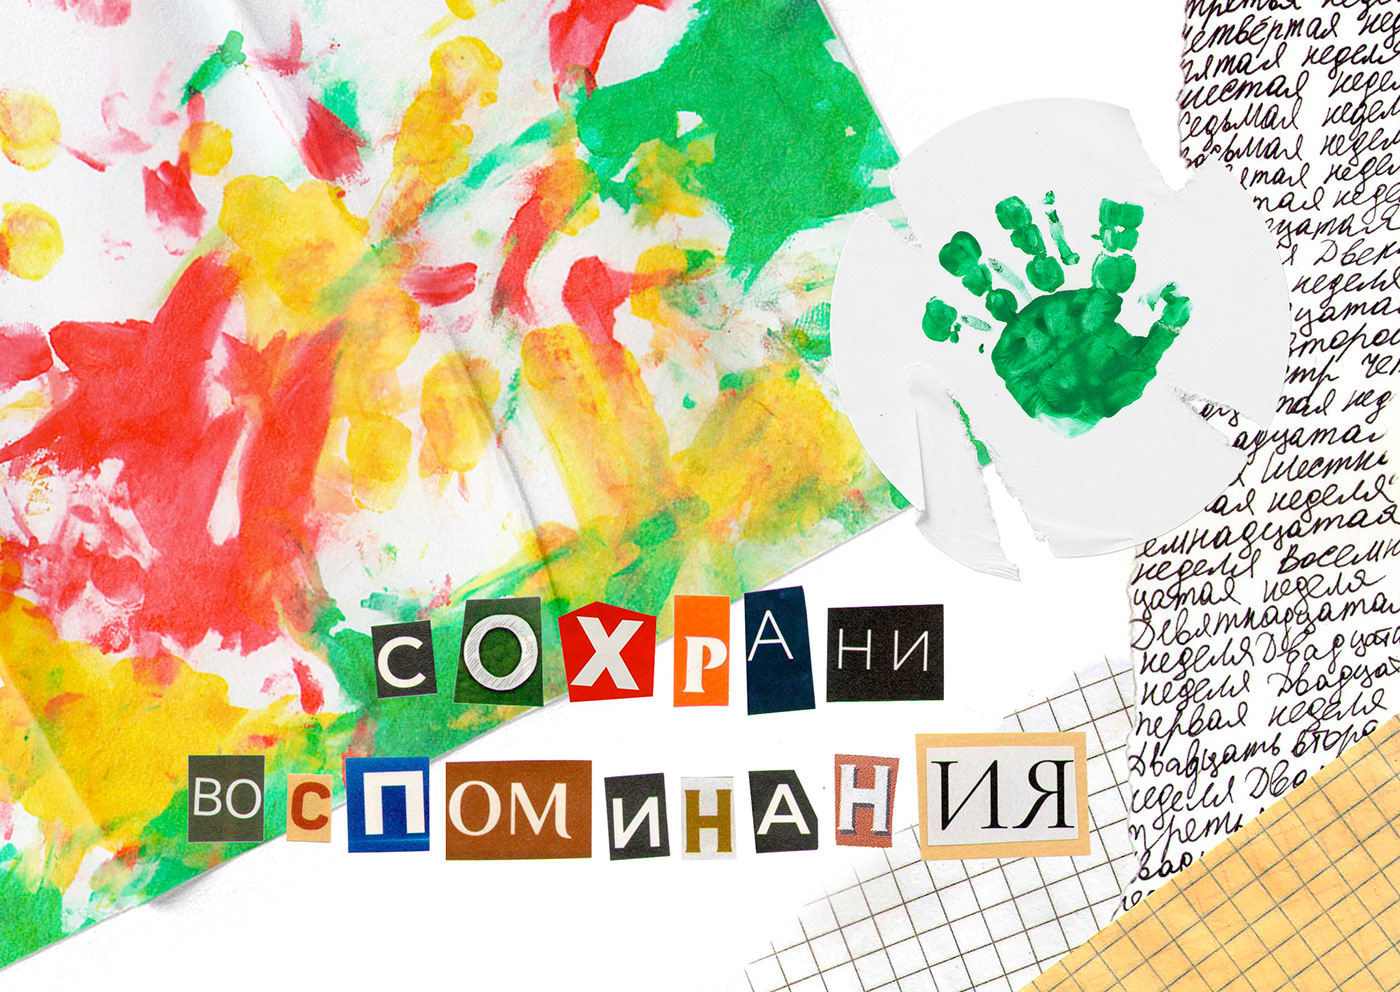 Zine  magazine design Graphic Designer kids children's book ILLUSTRATION  typography   collage